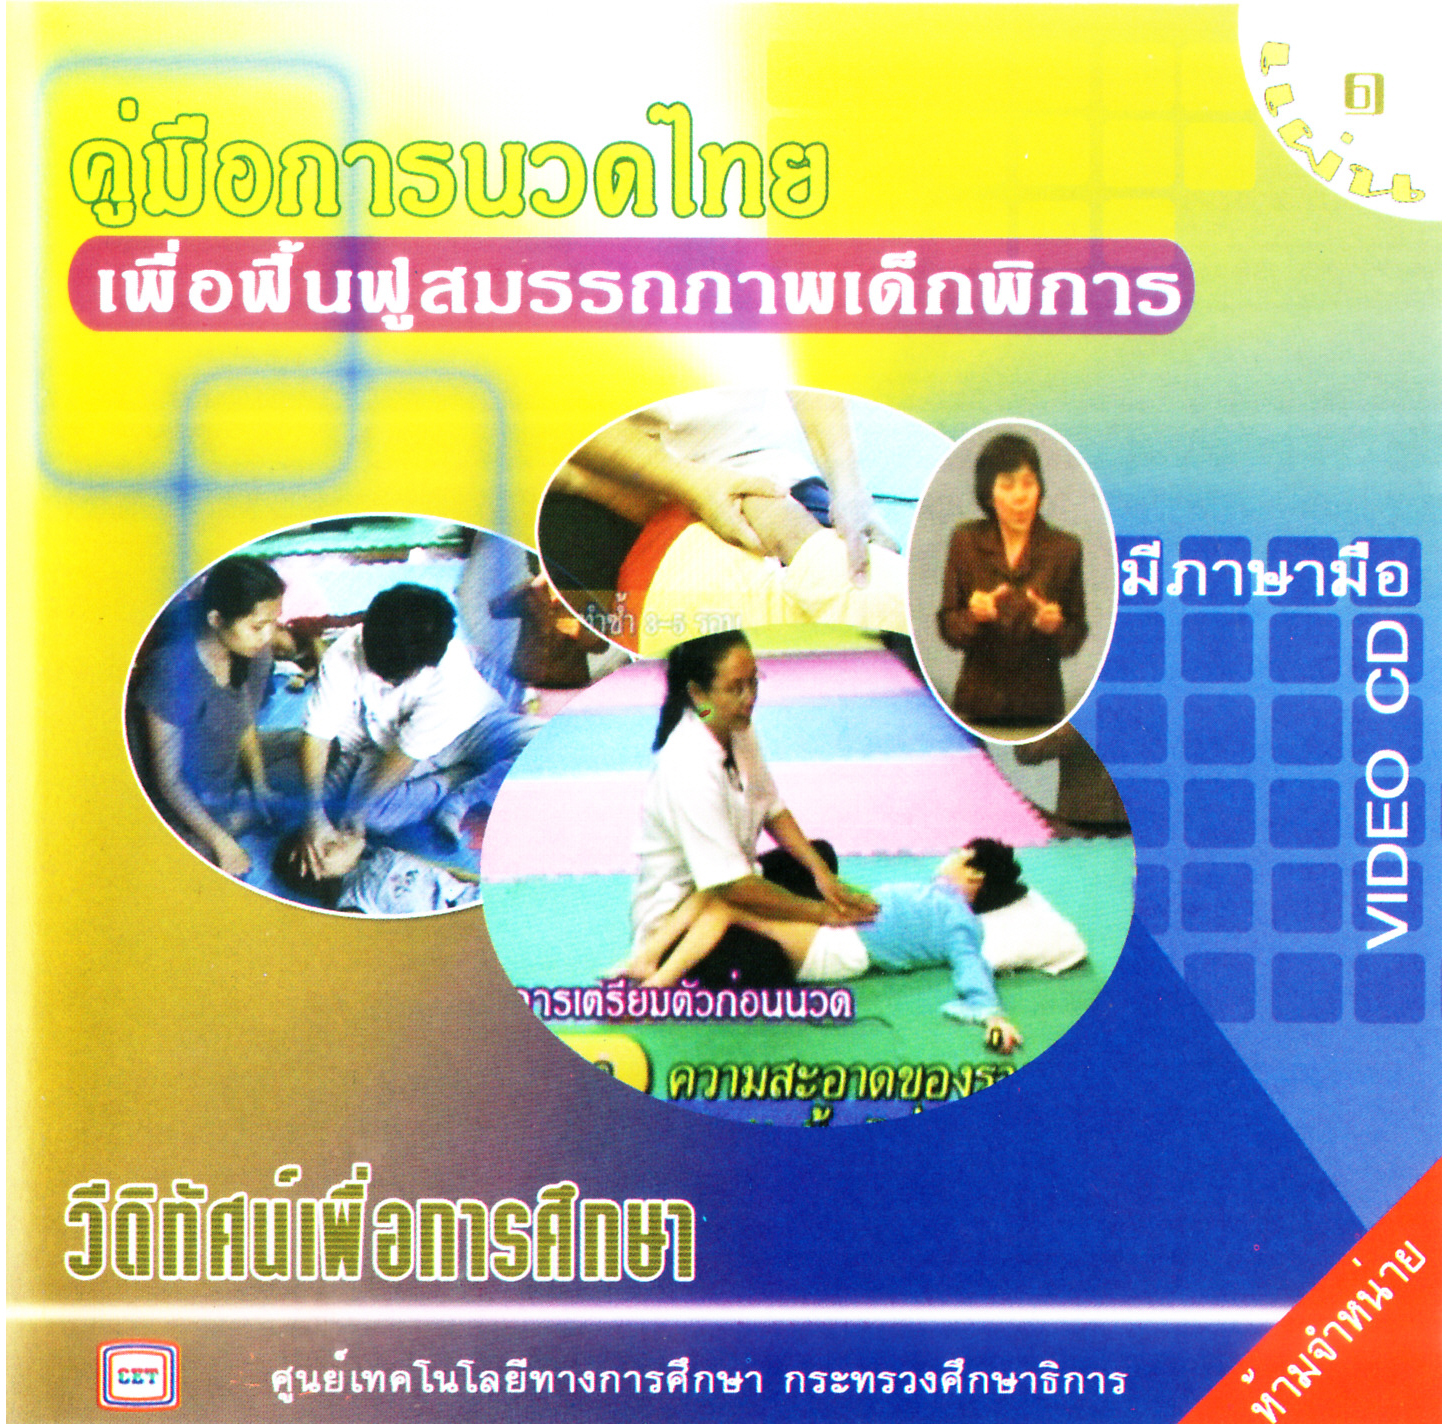 รายการวีดิทัศน์เพื่อการศึกษาสำหรับคนพิการ คู่มือการนวดไทย เพื่อฟื้นฟูสมรรถภาพเด็กพิการ